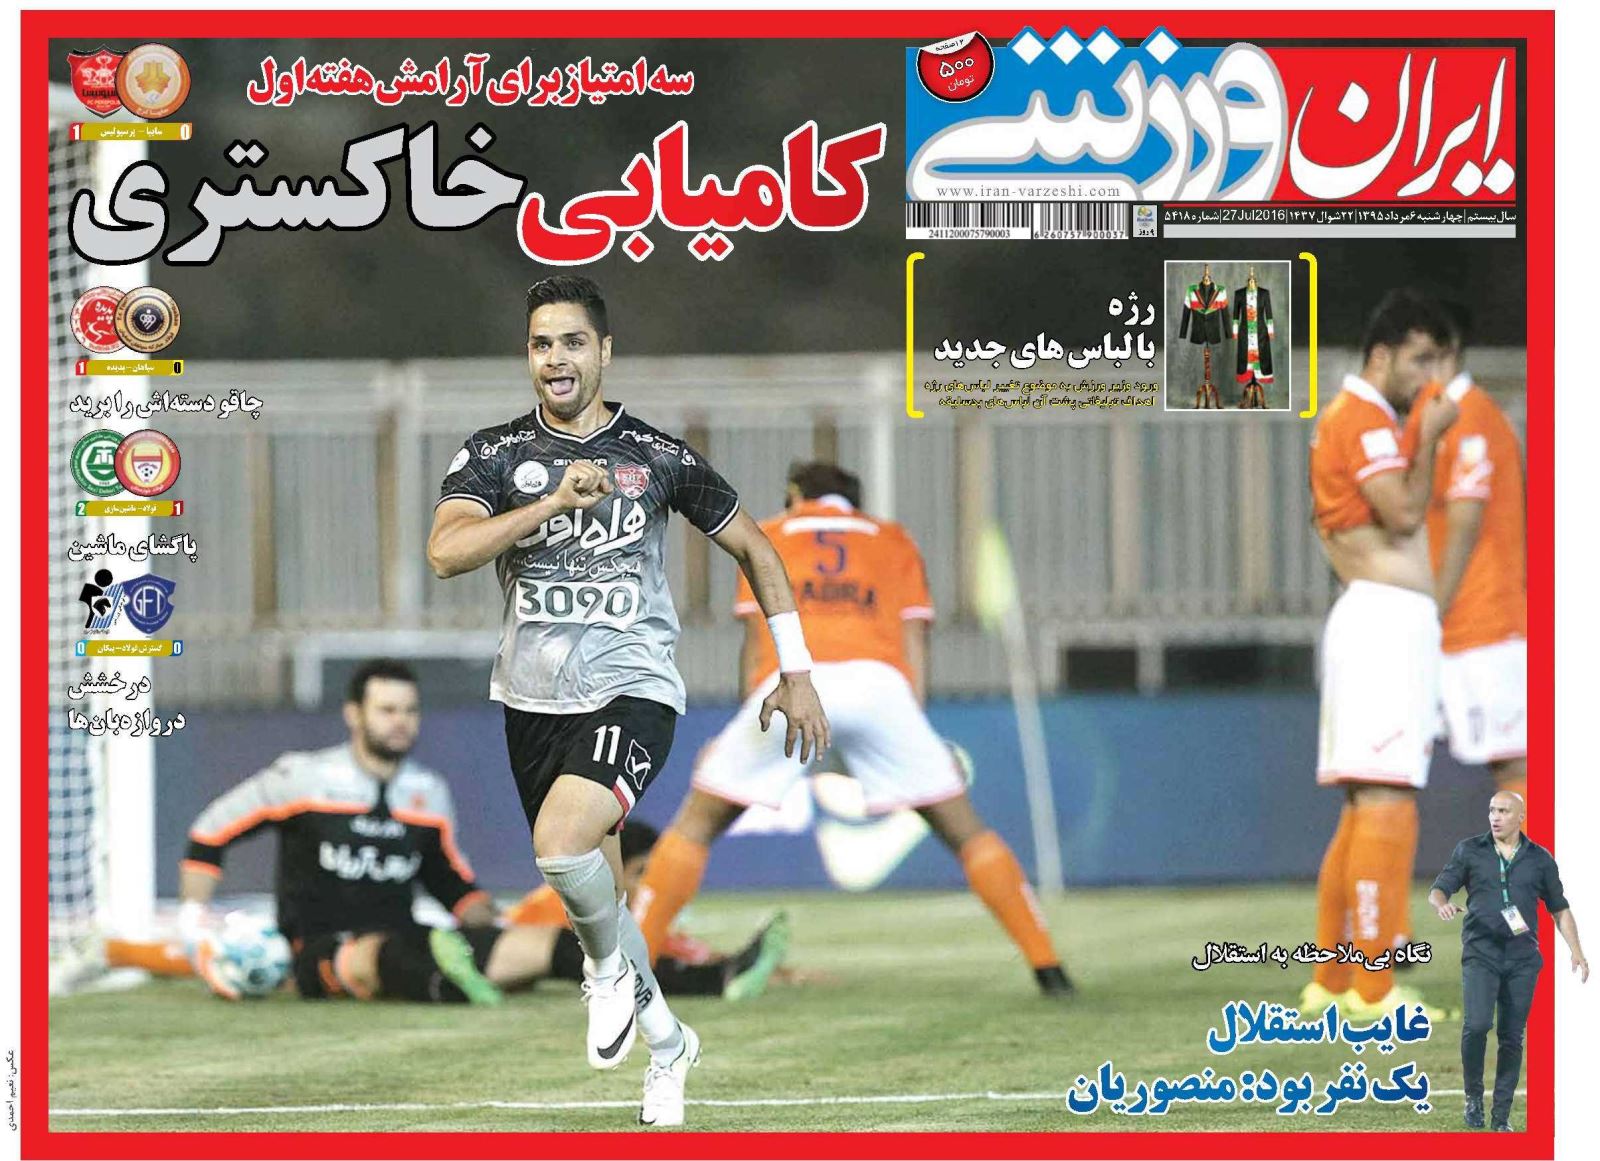 جلد ایران ورزشی/چهارشنبه 6 مرداد 95